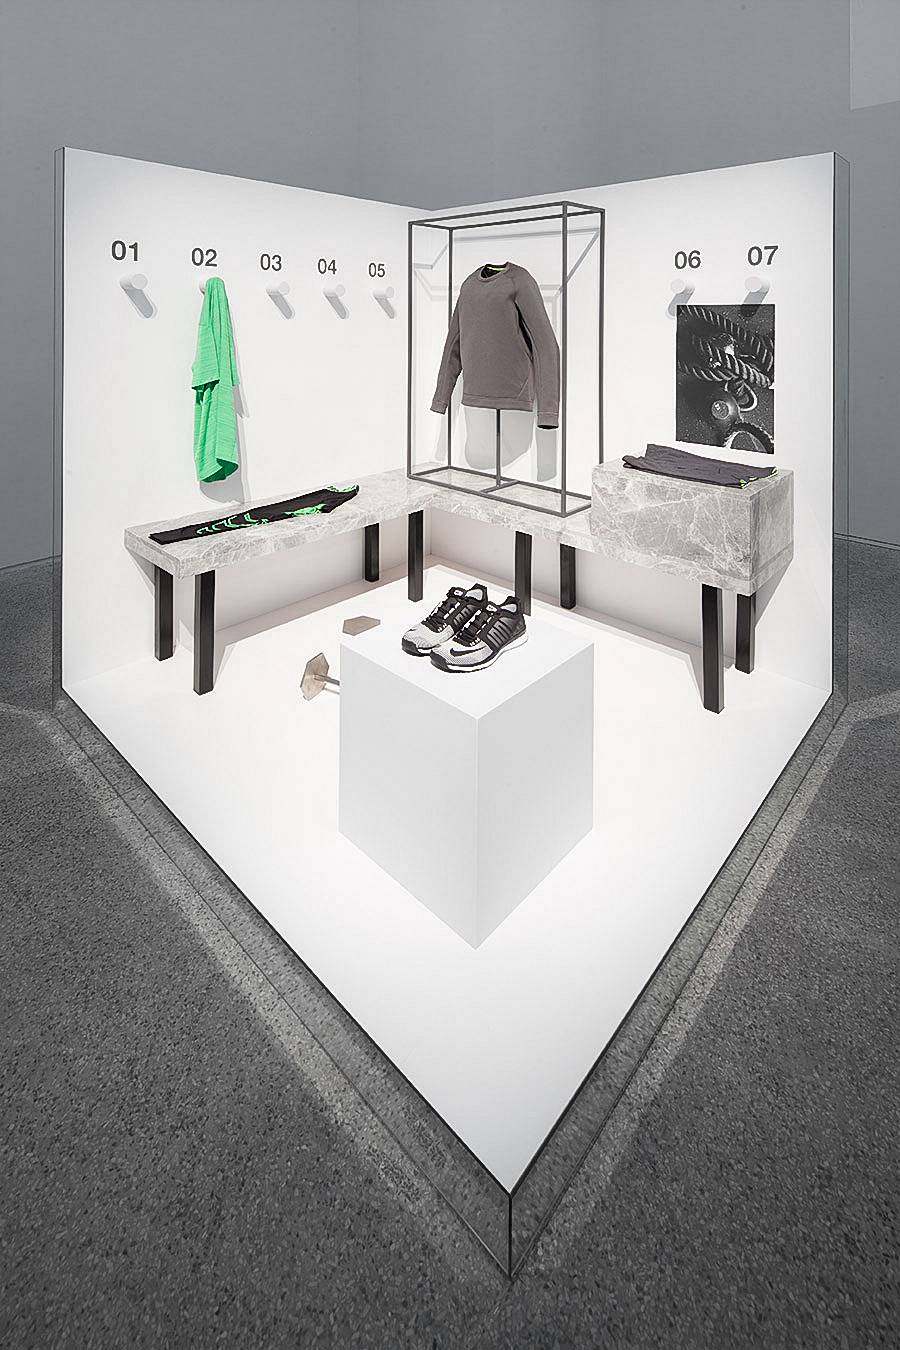 Nike-Studio-at-Beijing-Art-Gallery-18.jpg